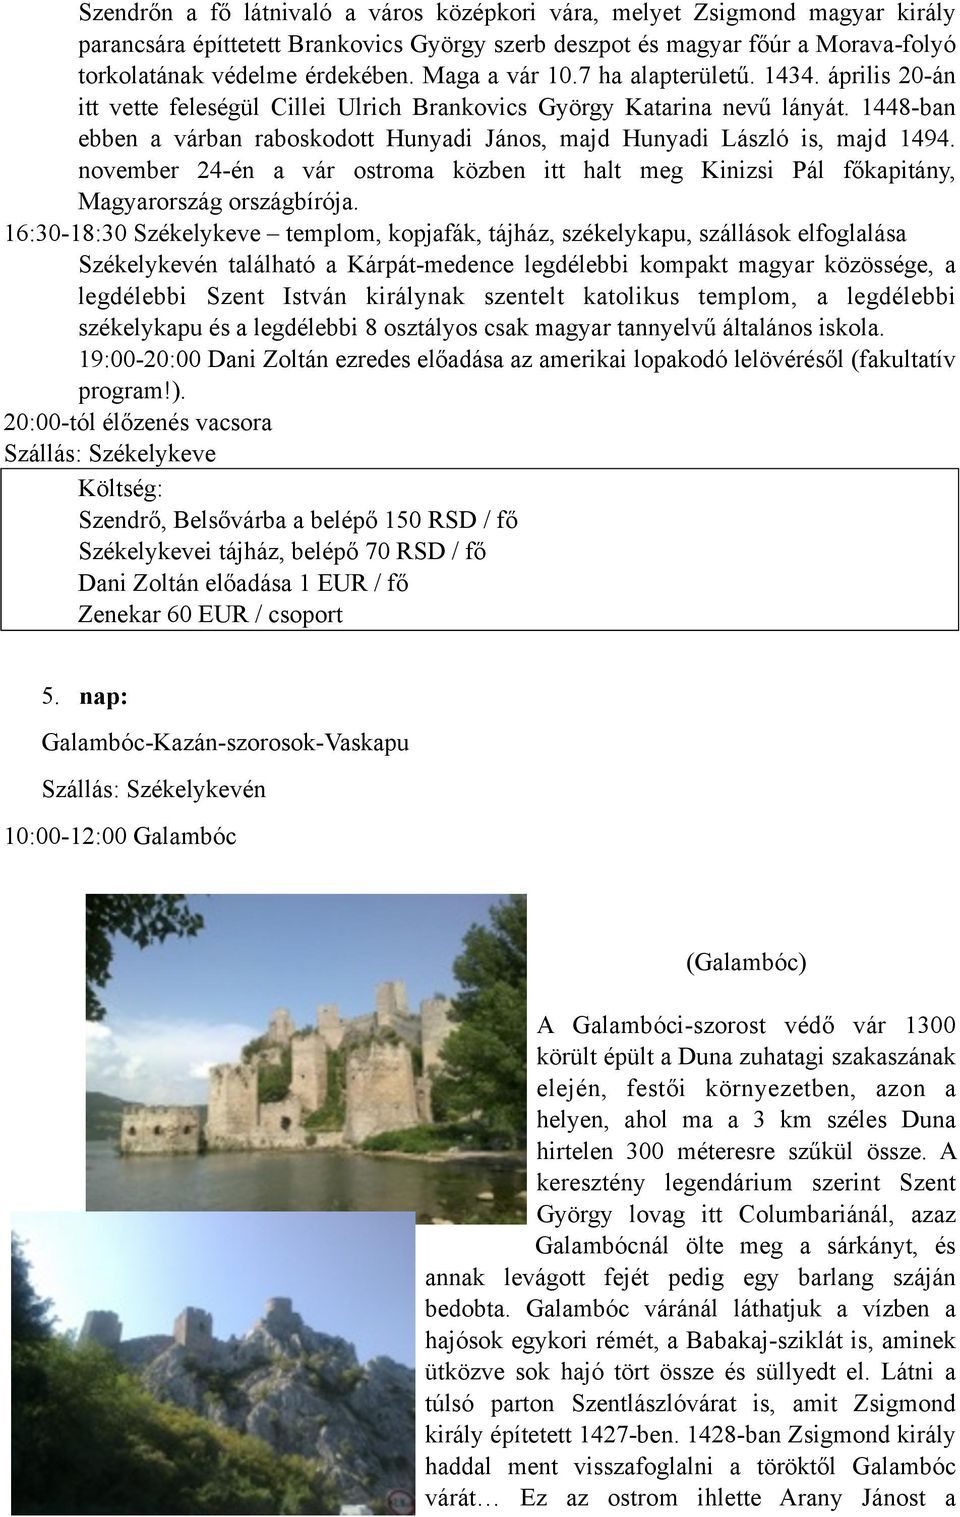 1448-ban ebben a várban raboskodott Hunyadi János, majd Hunyadi László is, majd 1494. november 24-én a vár ostroma közben itt halt meg Kinizsi Pál főkapitány, Magyarország országbírója.